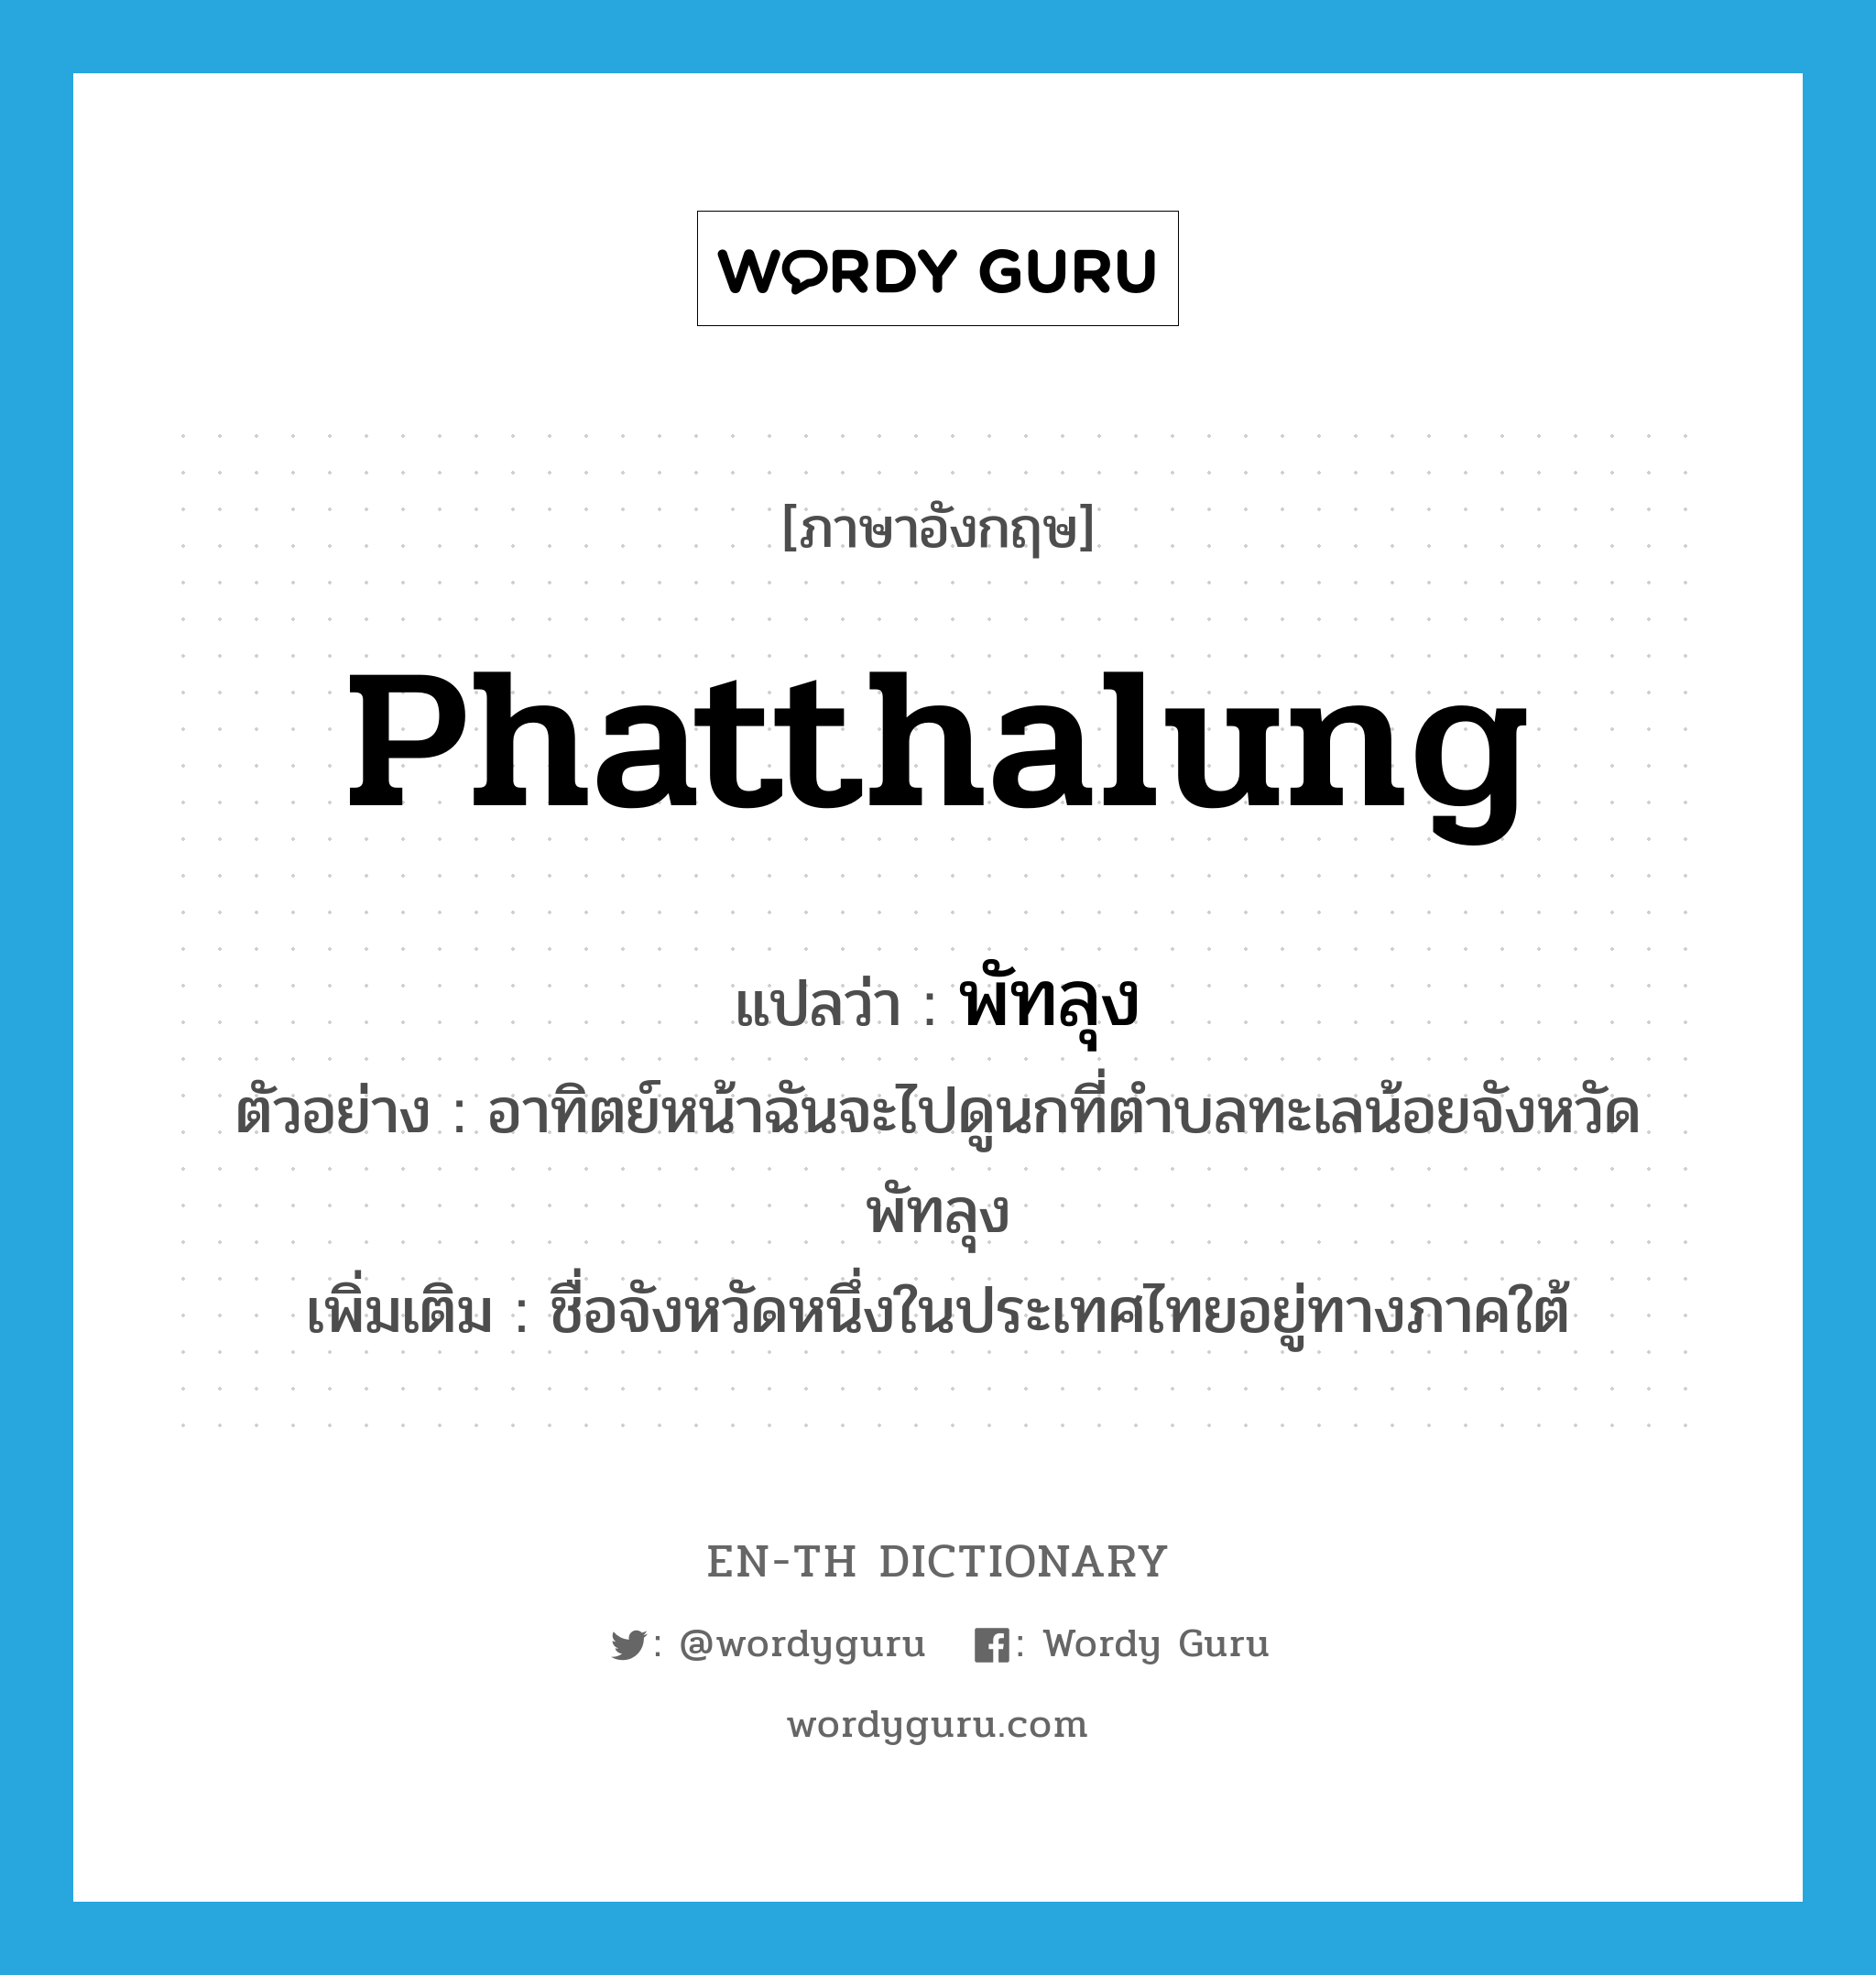 Phatthalung แปลว่า?, คำศัพท์ภาษาอังกฤษ Phatthalung แปลว่า พัทลุง ประเภท N ตัวอย่าง อาทิตย์หน้าฉันจะไปดูนกที่ตำบลทะเลน้อยจังหวัดพัทลุง เพิ่มเติม ชื่อจังหวัดหนึ่งในประเทศไทยอยู่ทางภาคใต้ หมวด N